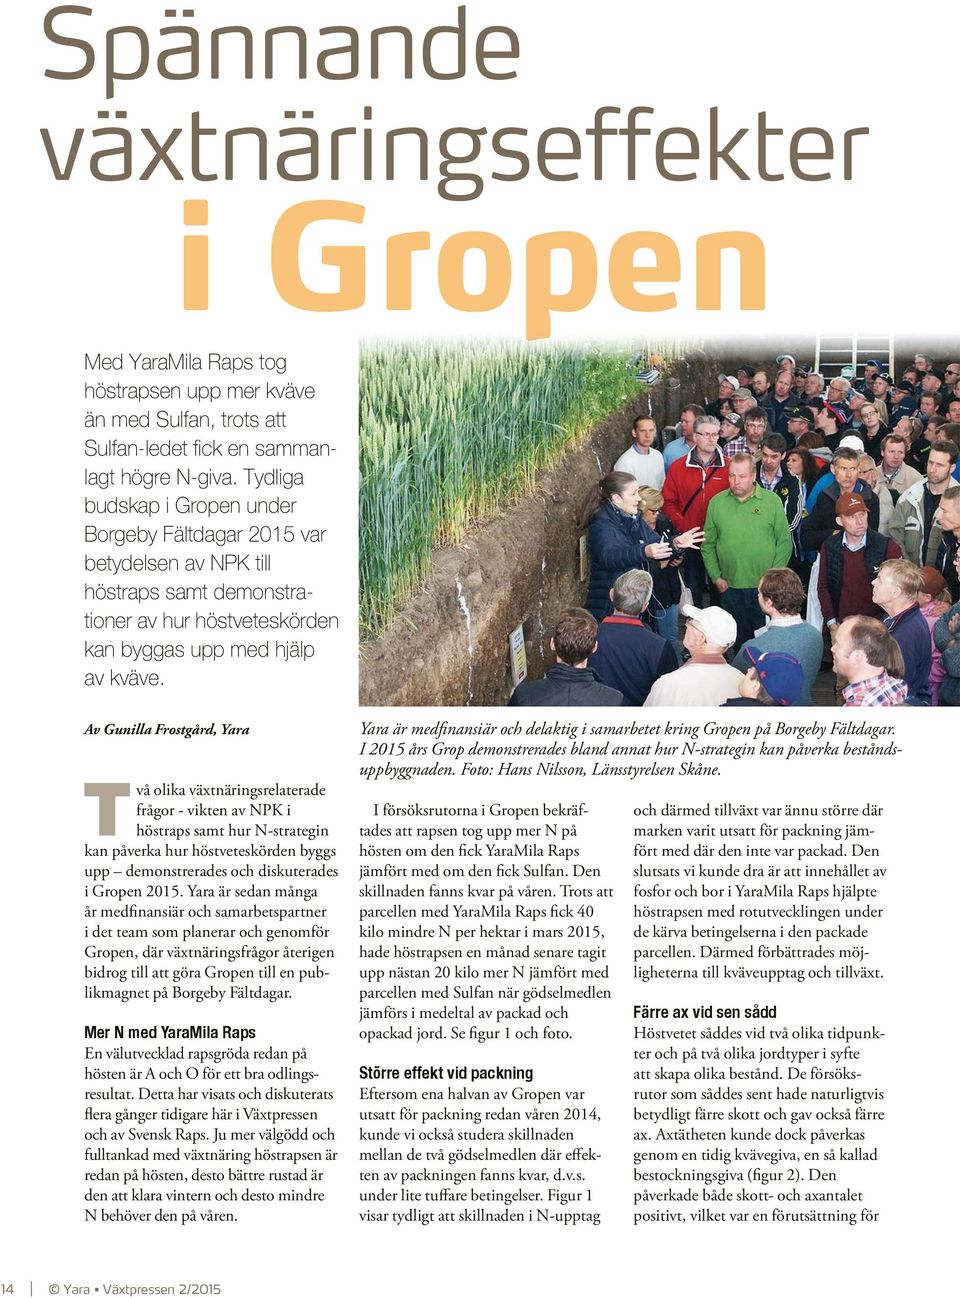 Av Gunilla Frostgård, Yara Två olika växtnäringsrelaterade frågor vikten av NPK i höstraps samt hur N strategin kan påverka hur höstveteskörden byggs upp demonstrerades och diskuterades i Gropen 2015.